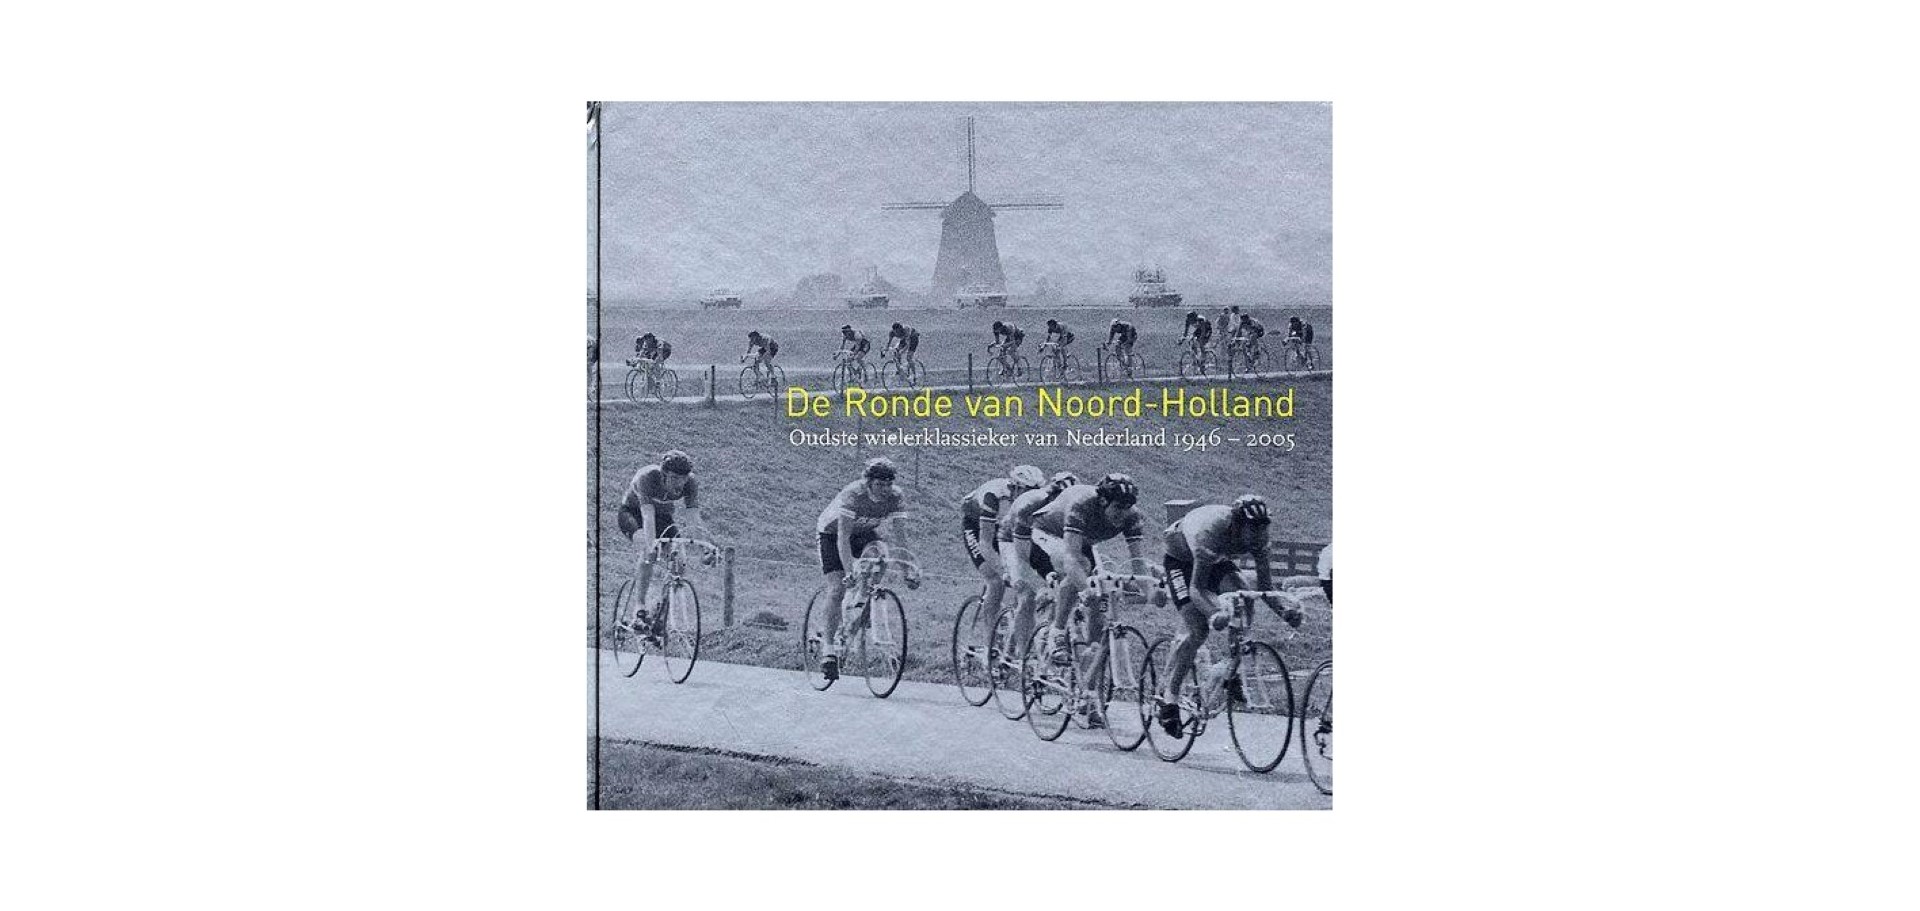 KAT, ROB - De Ronde van Noord-Holland. Oudste wielerklassieker van Nederland 1946 - 2005.